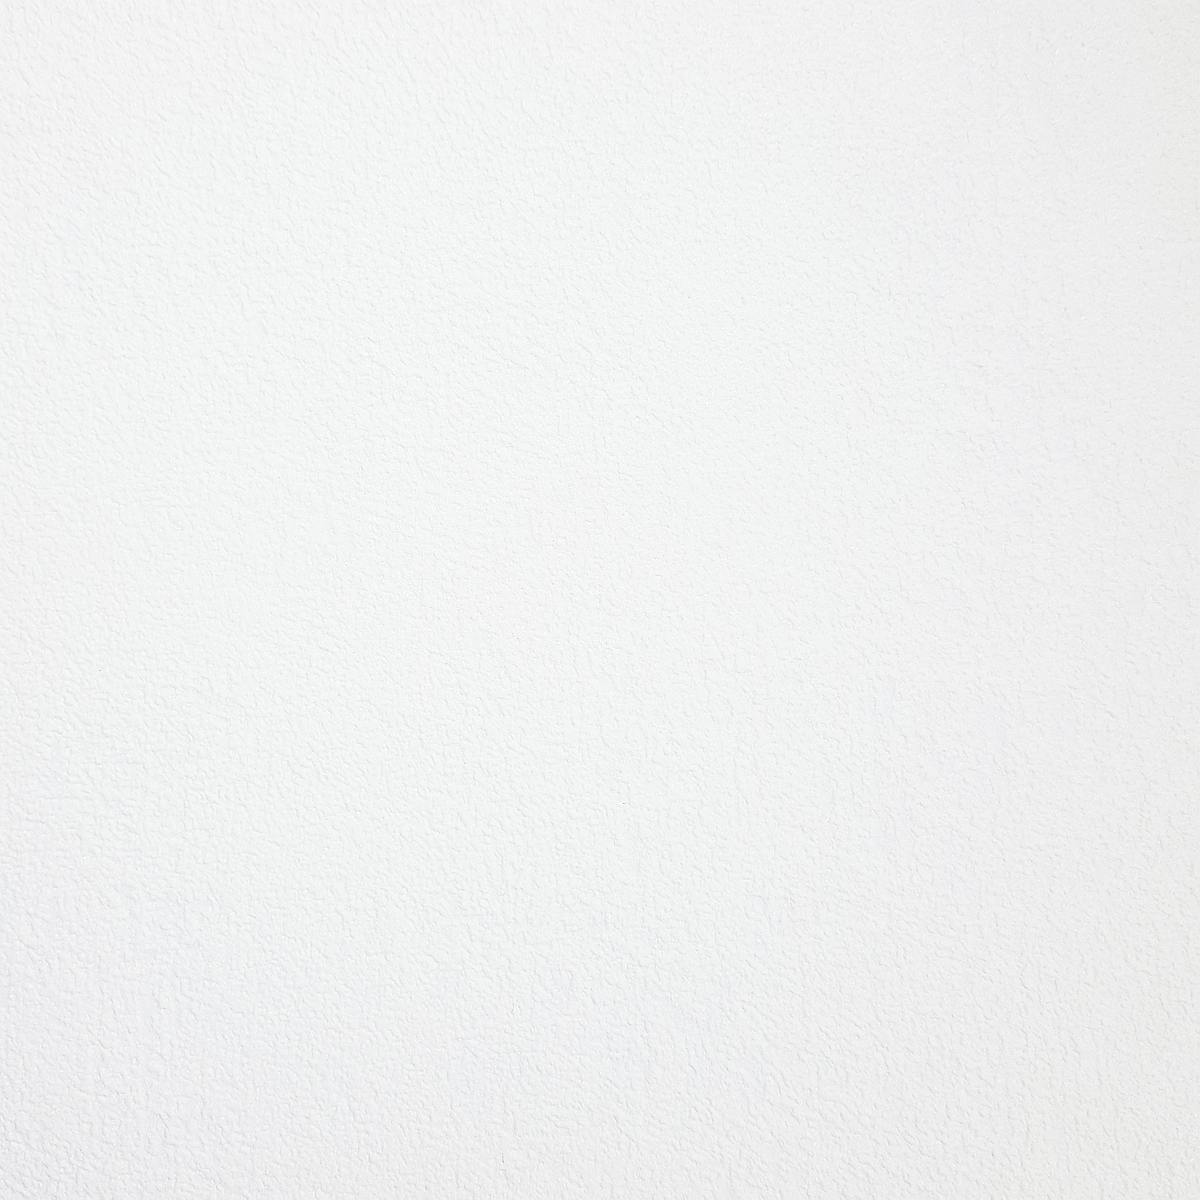 White wallpaper for room ceilings